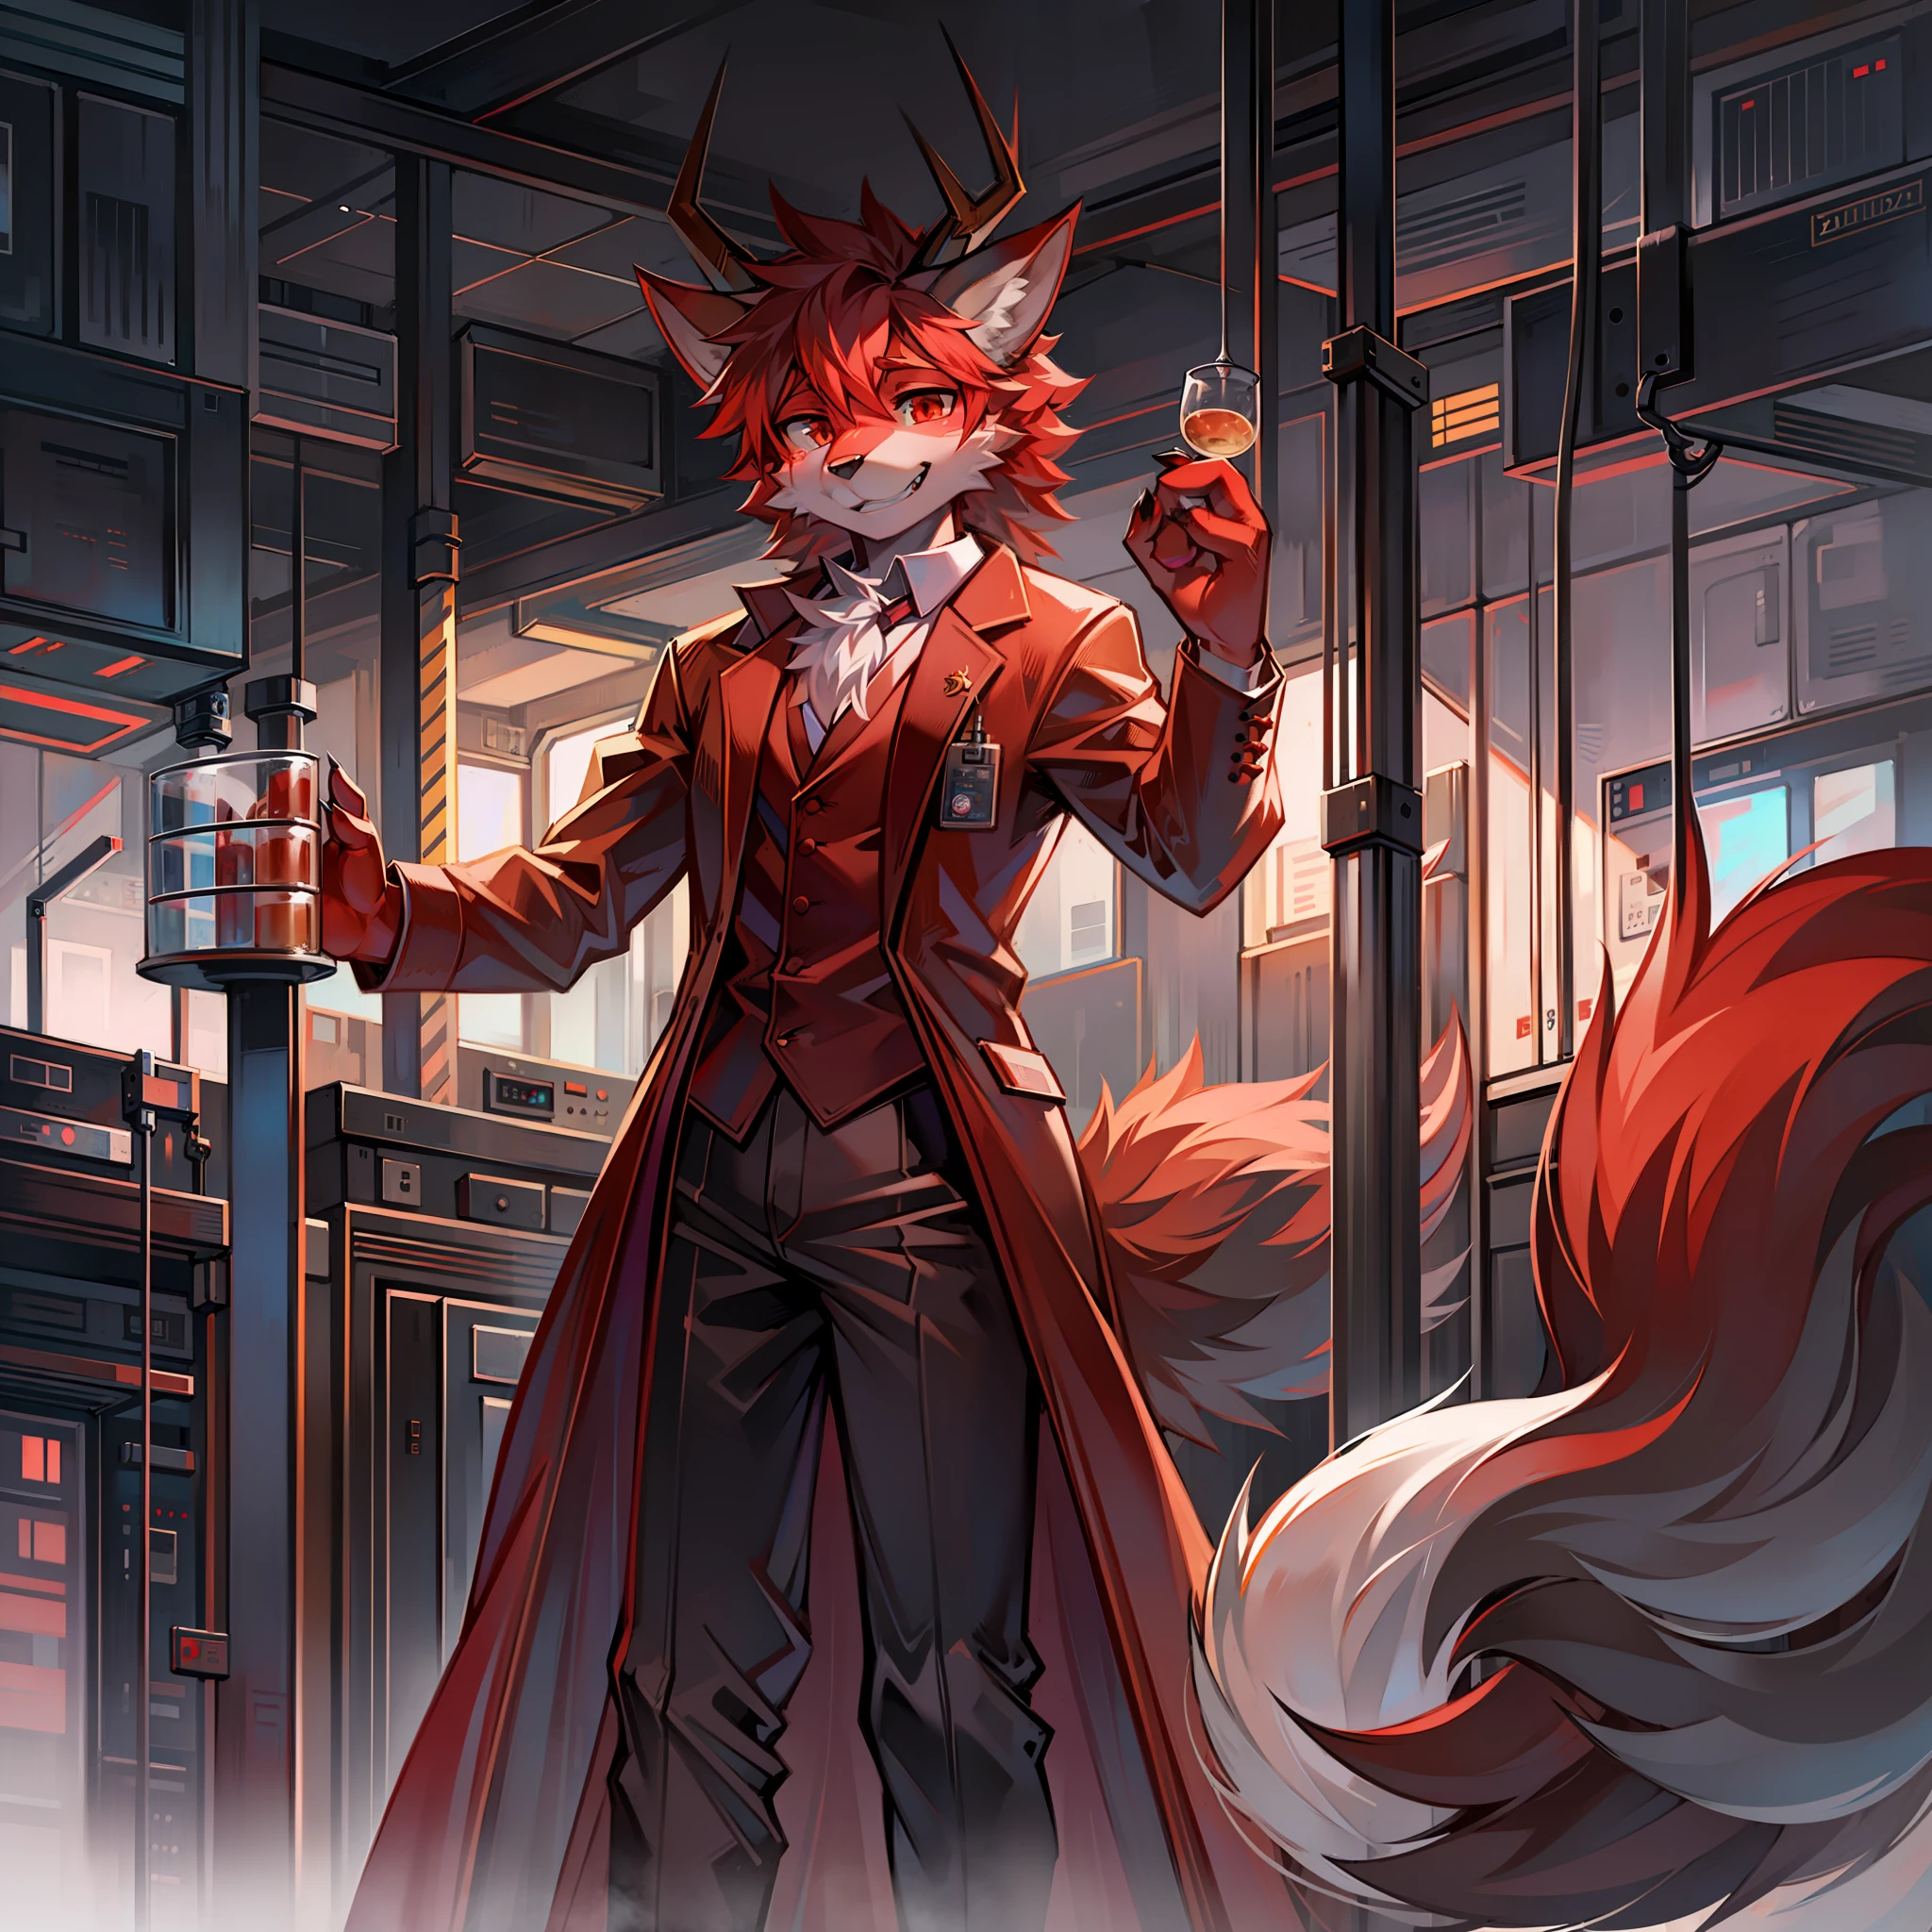 Furry Red Wolf Habillé en scientifique dans un laboratoire avec 4 cornes de dragon.